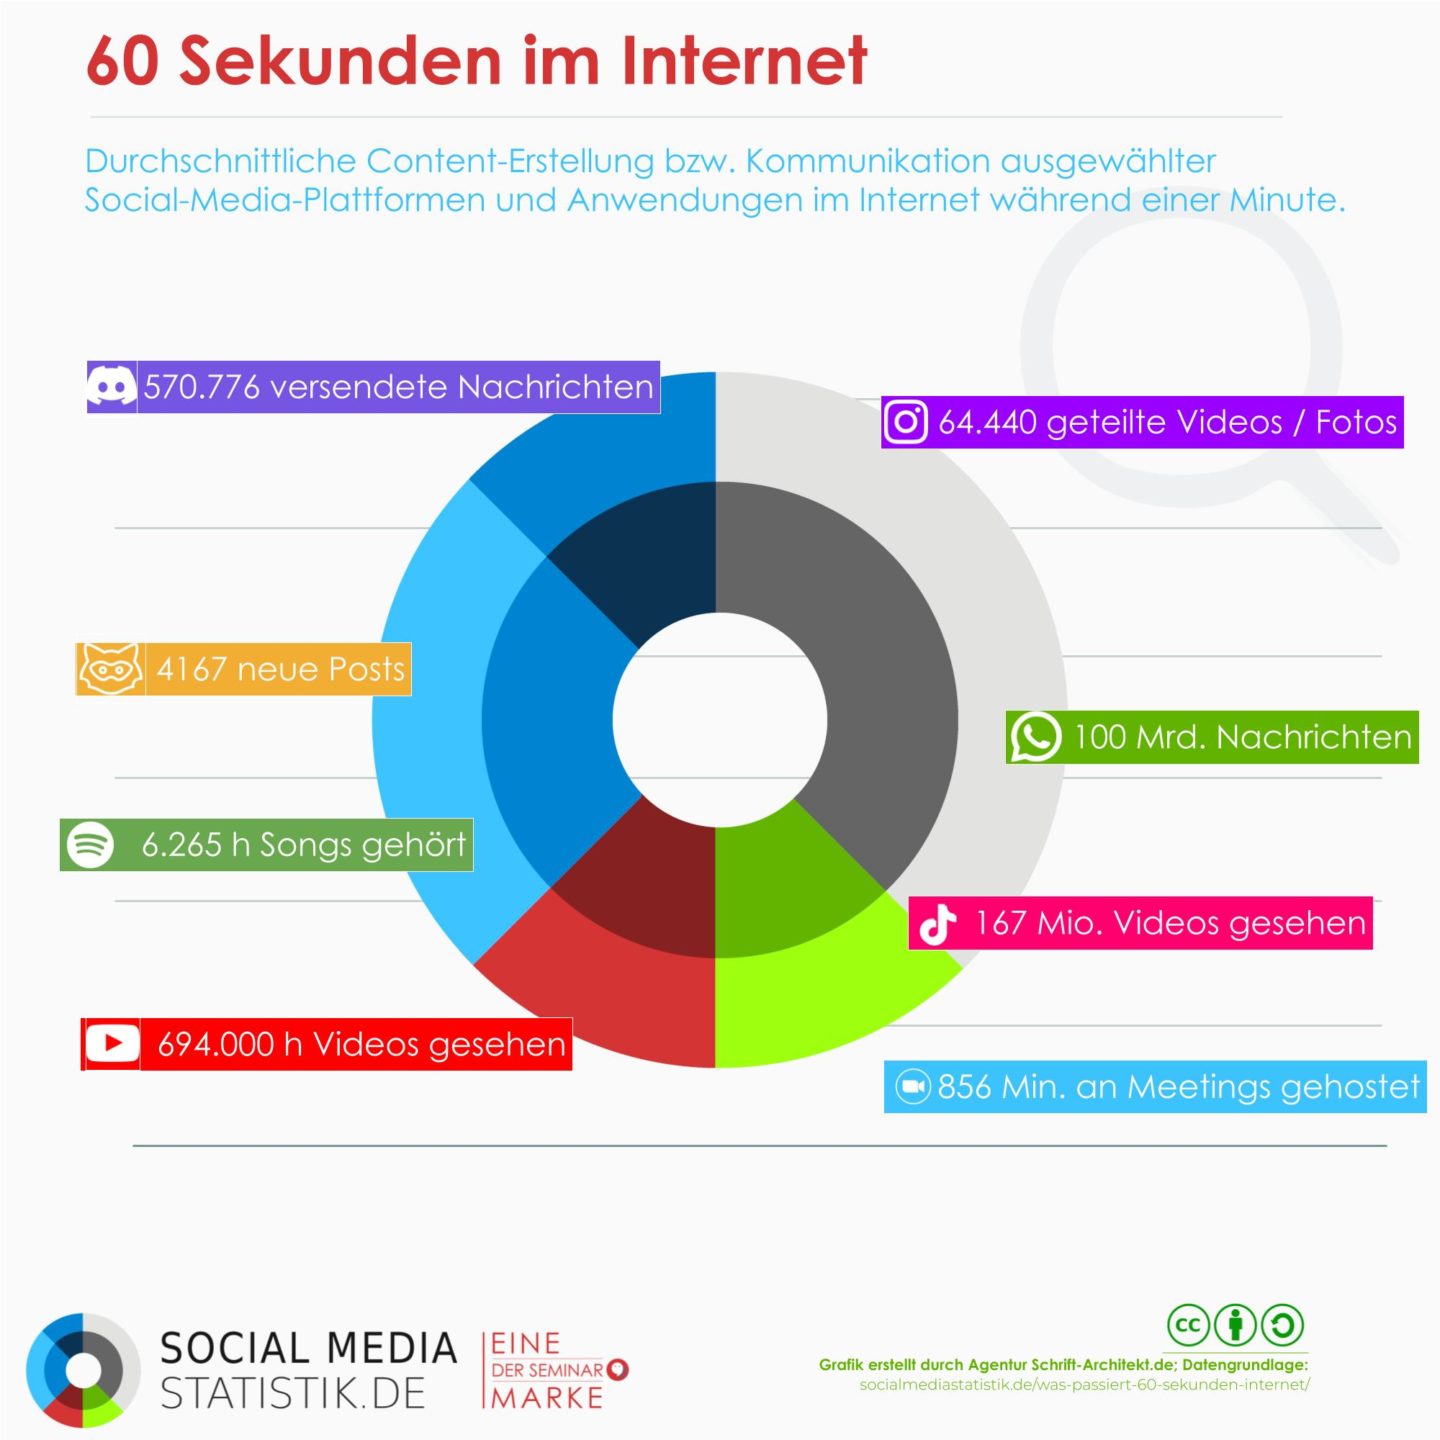 Was passiert in 60 Sekunden im Internet? | Infografik